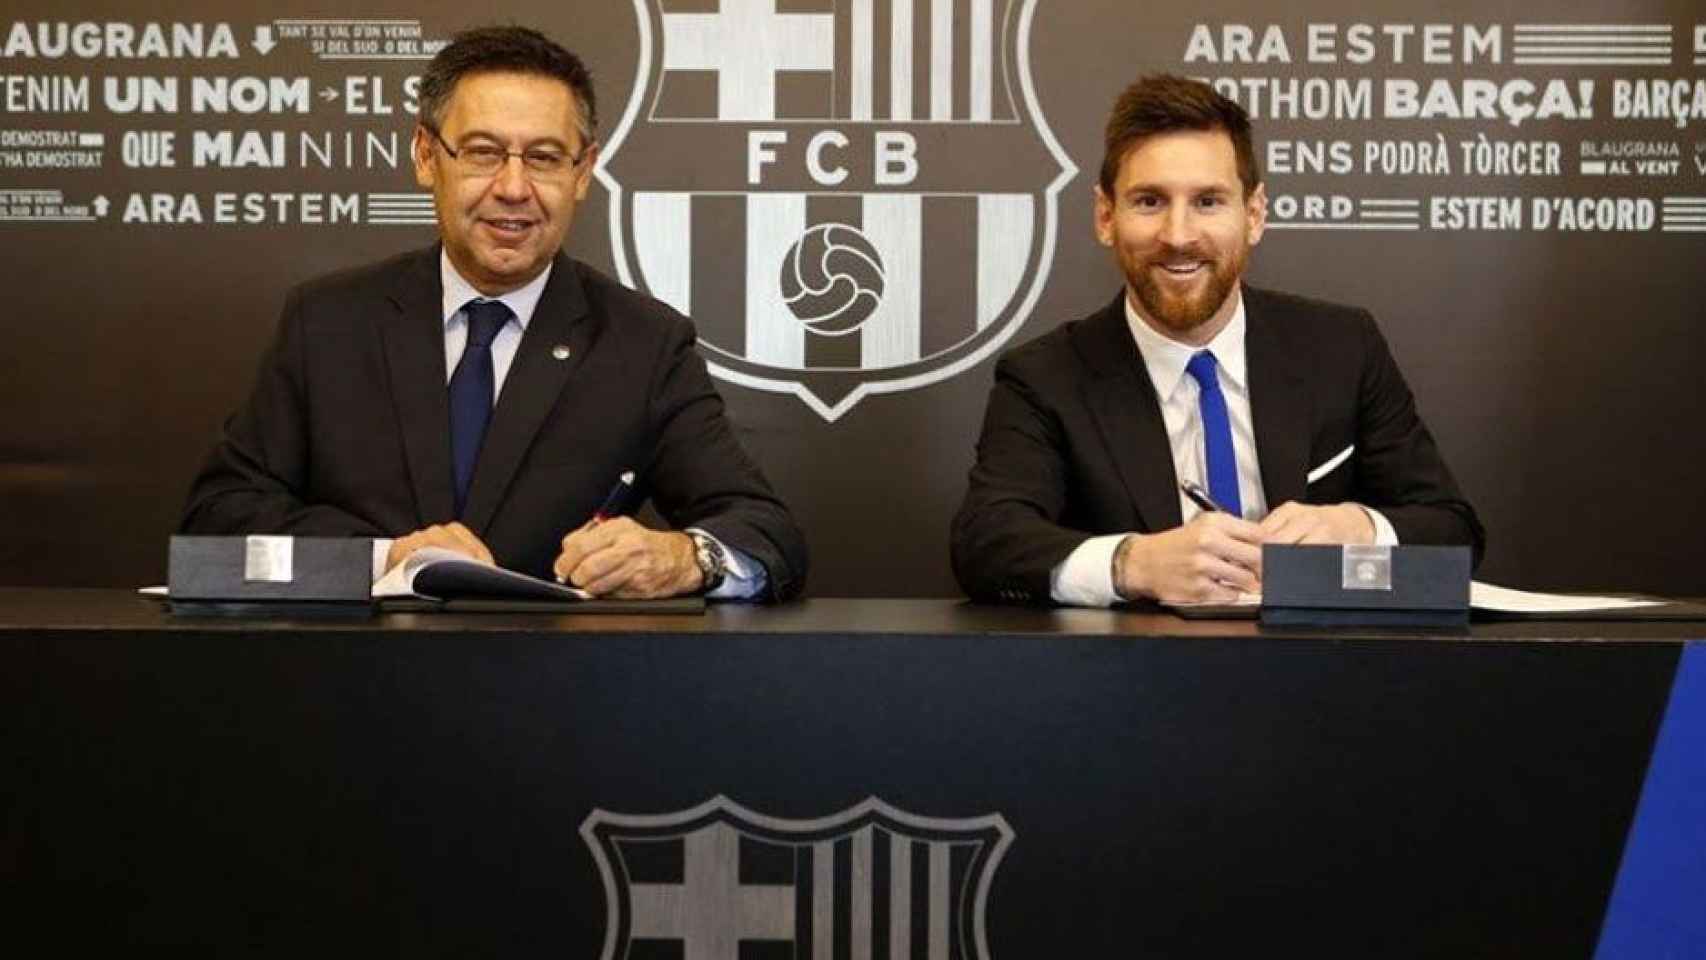 Bartomeu posa junto a la gran estrella del Barça, Leo Messi / FCB